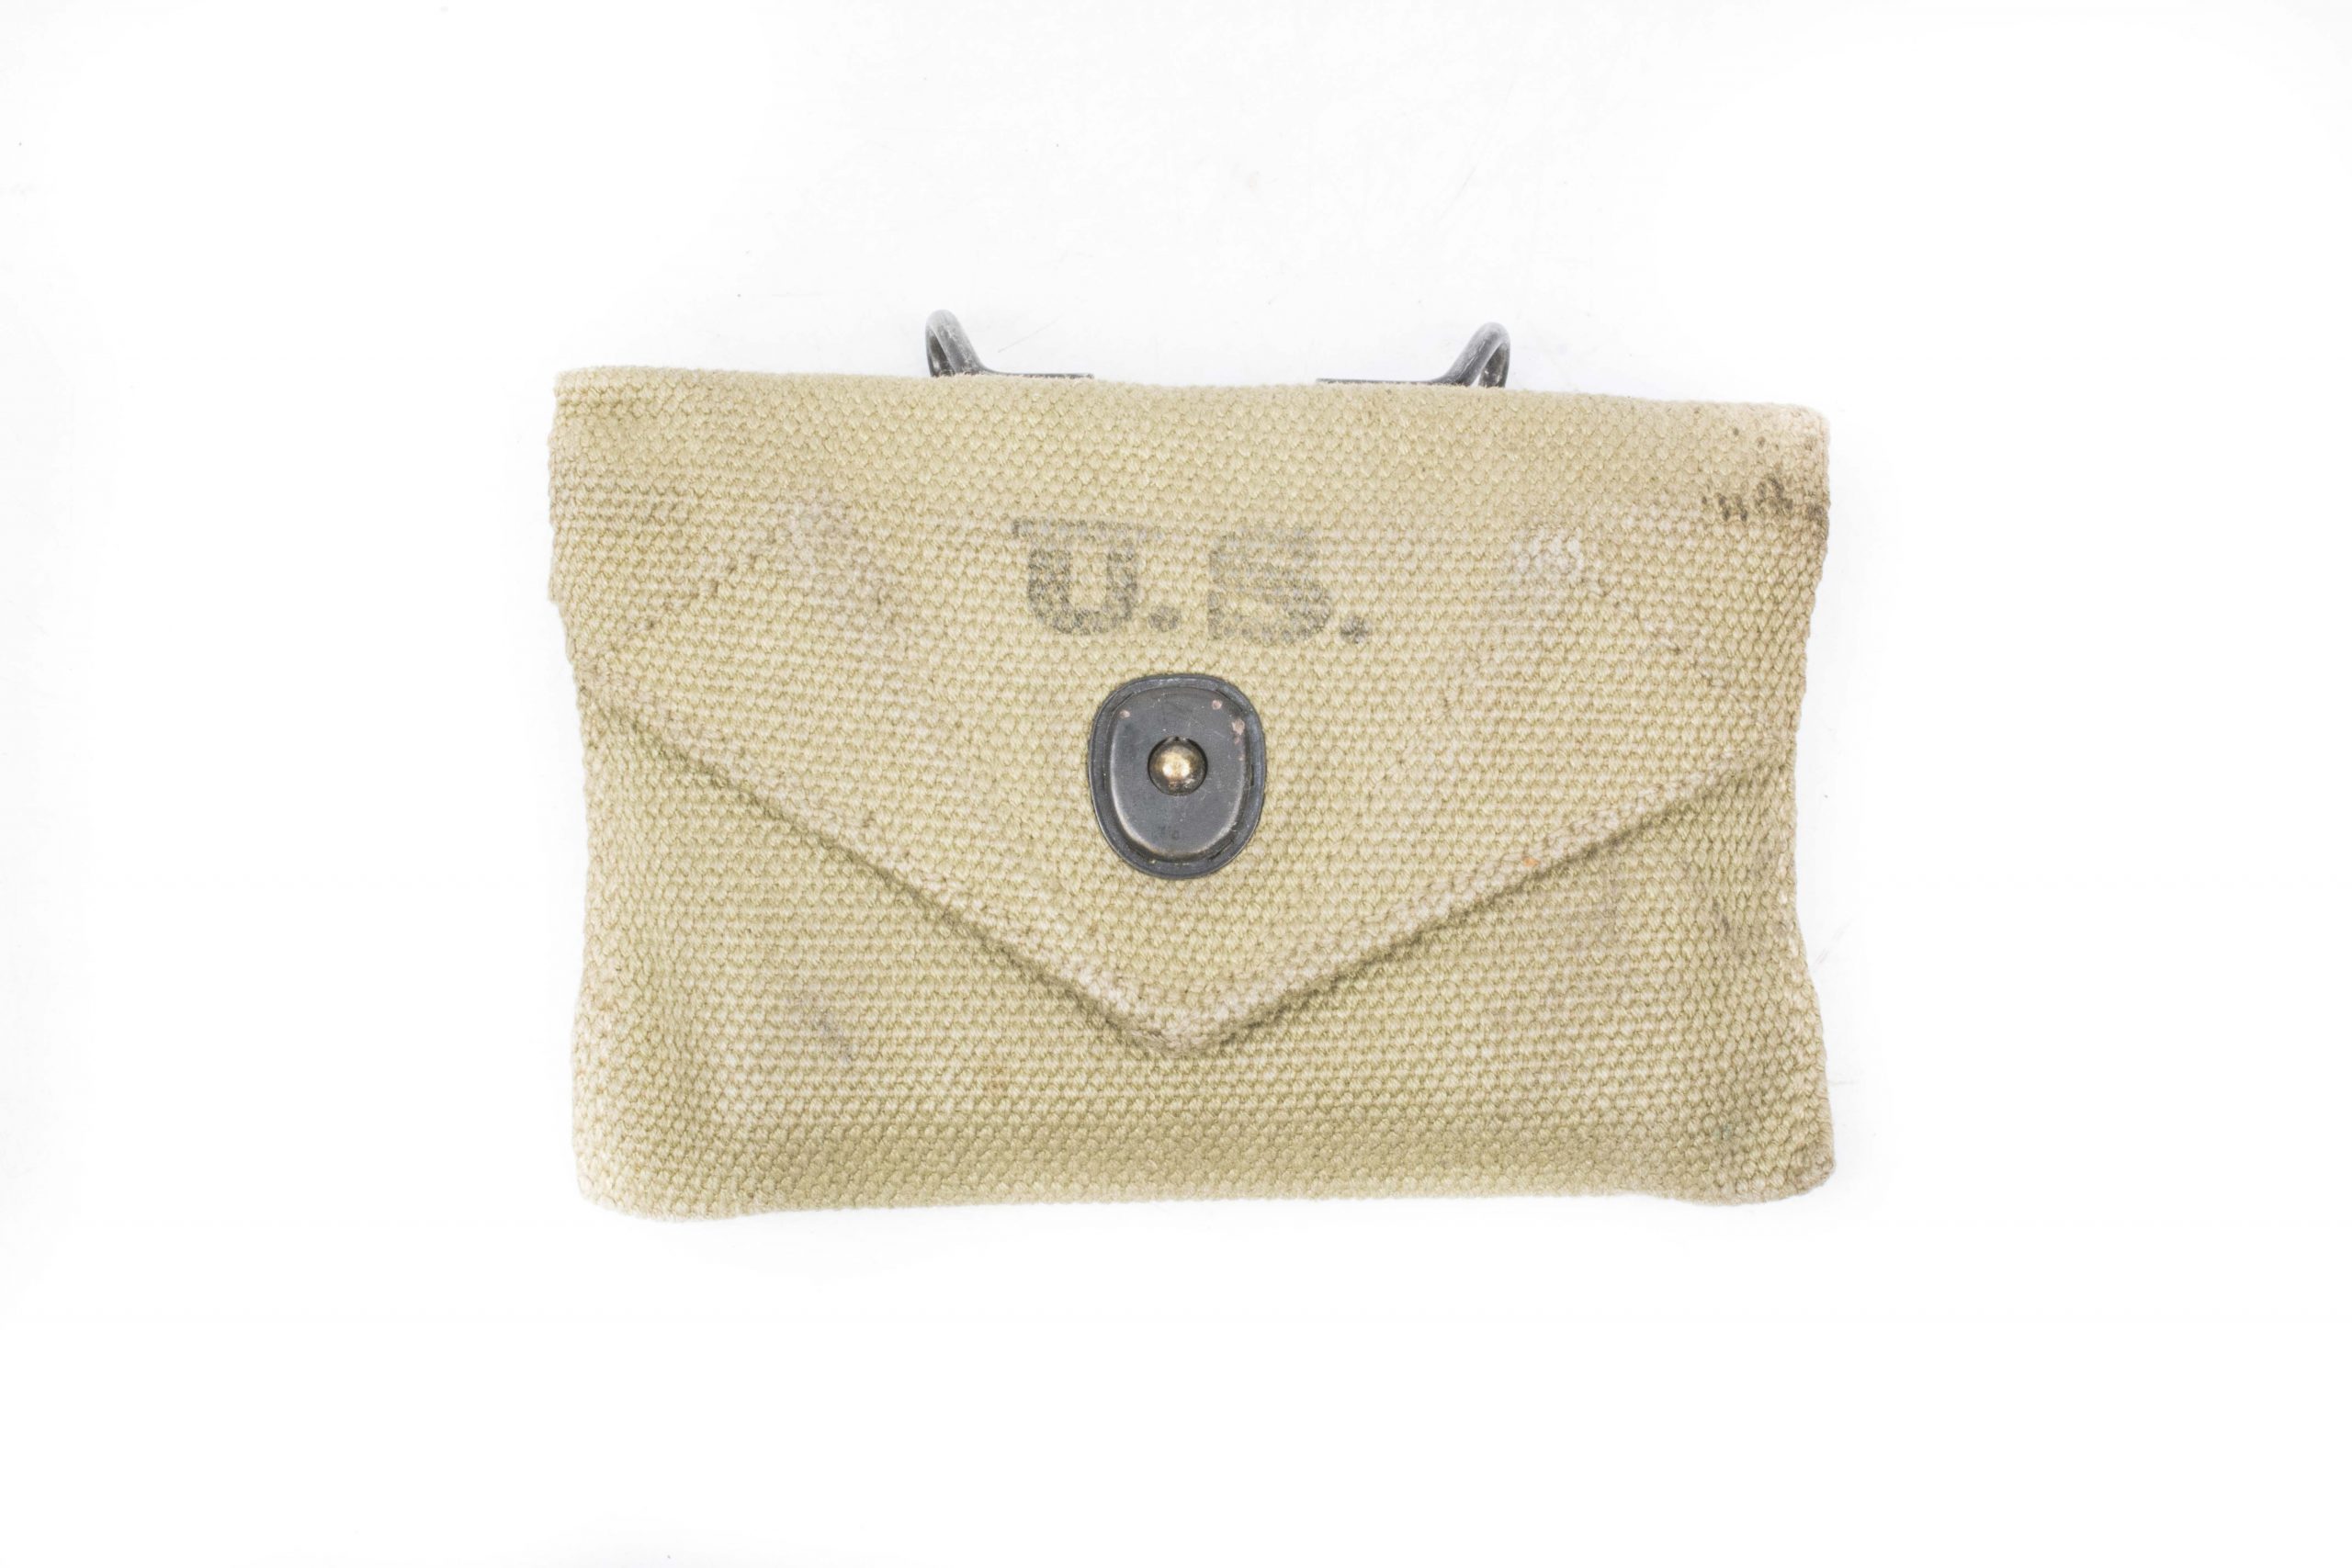 US Army First Aid Kit M-1942 Pouch OLIV Verbandspäckchen Tasche